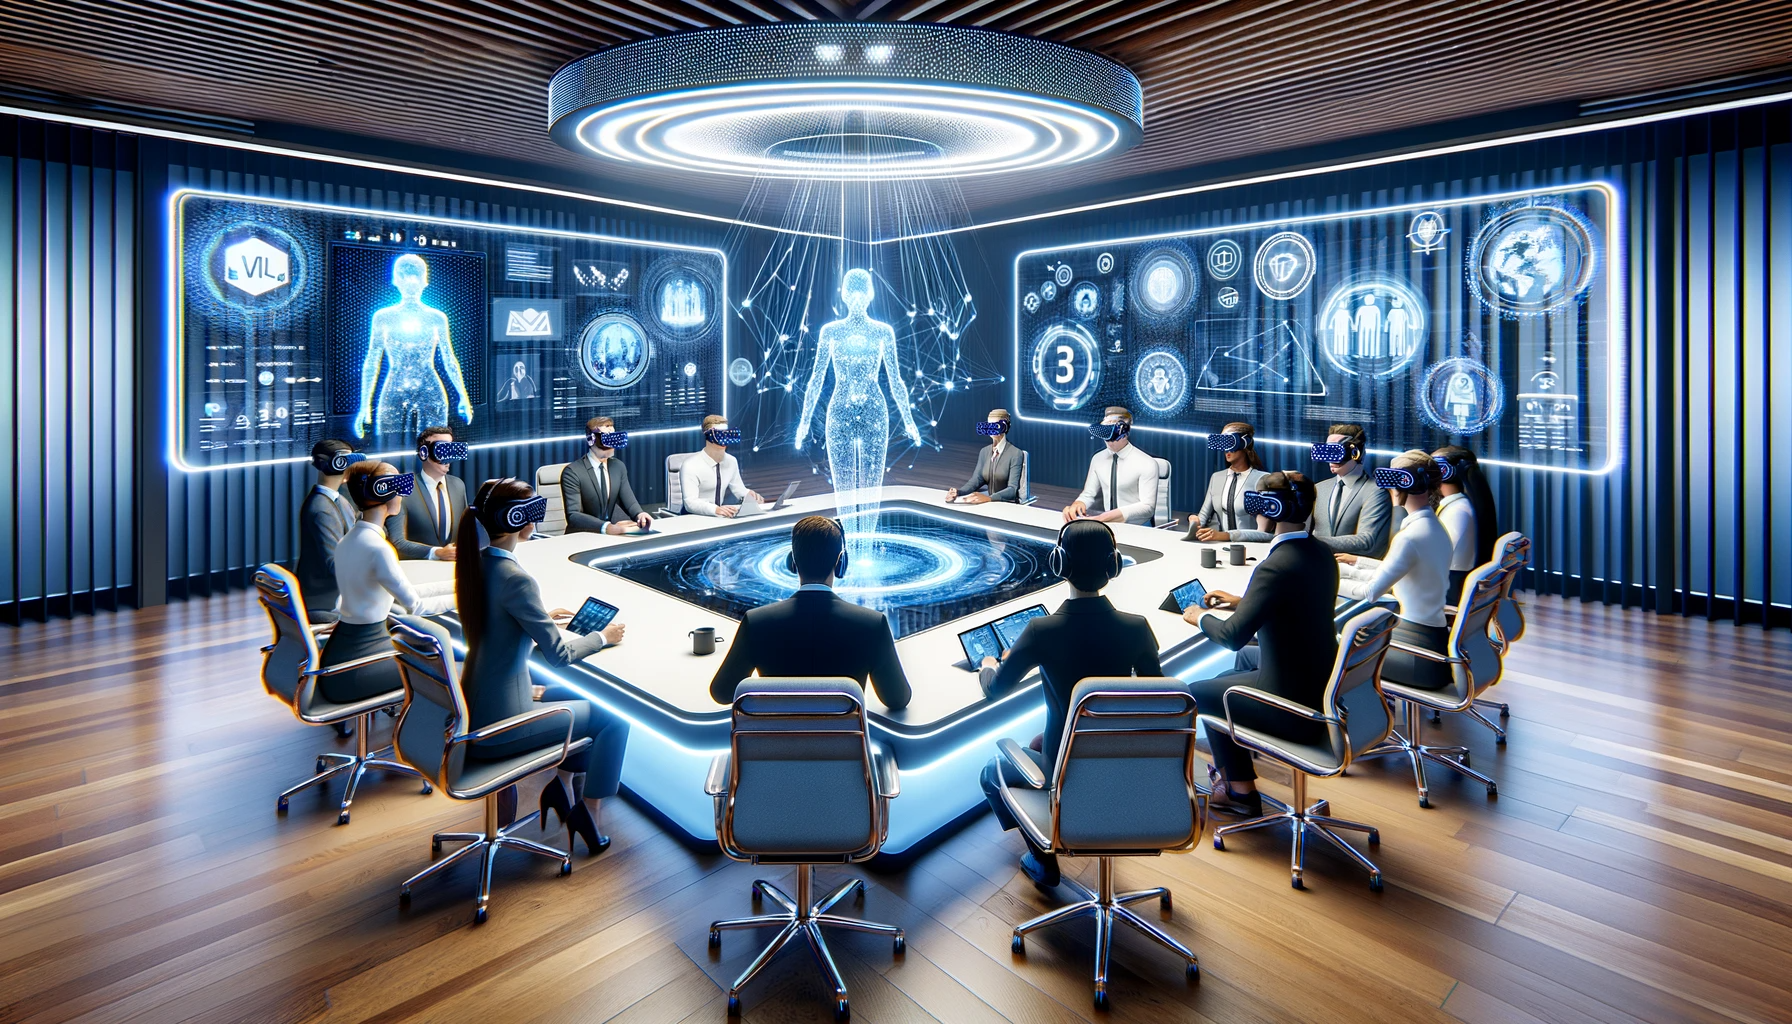 Sala de reuniones virtual de alta tecnología con diversos avatares alrededor de una mesa holográfica, mostrando la interfaz de Microsoft Mesh y los logotipos de Microsoft Teams, simbolizando el trabajo híbrido.